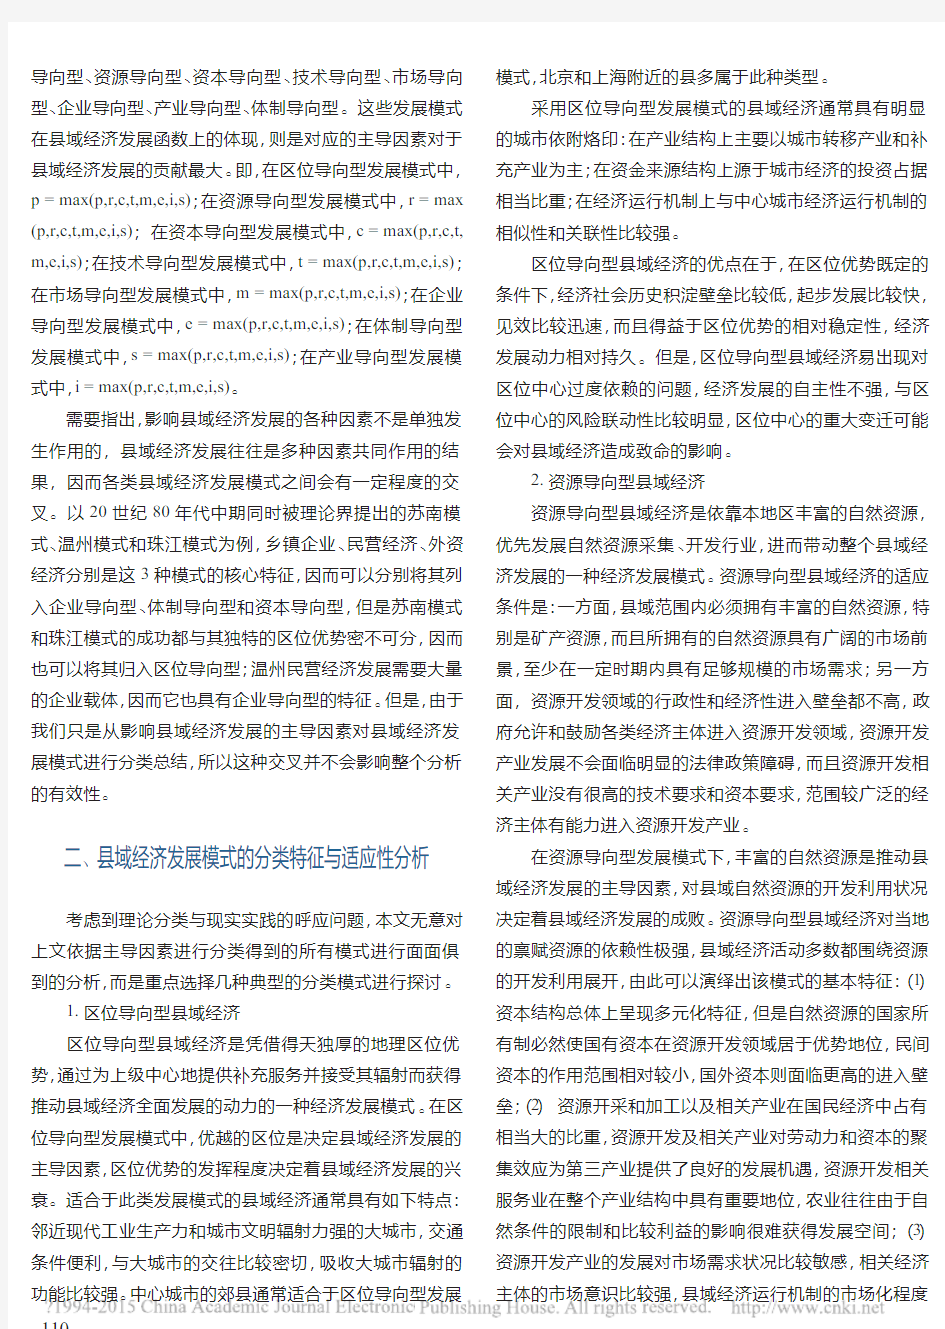 中国县域经济发展模式的分类特征与演化路径_战炤磊